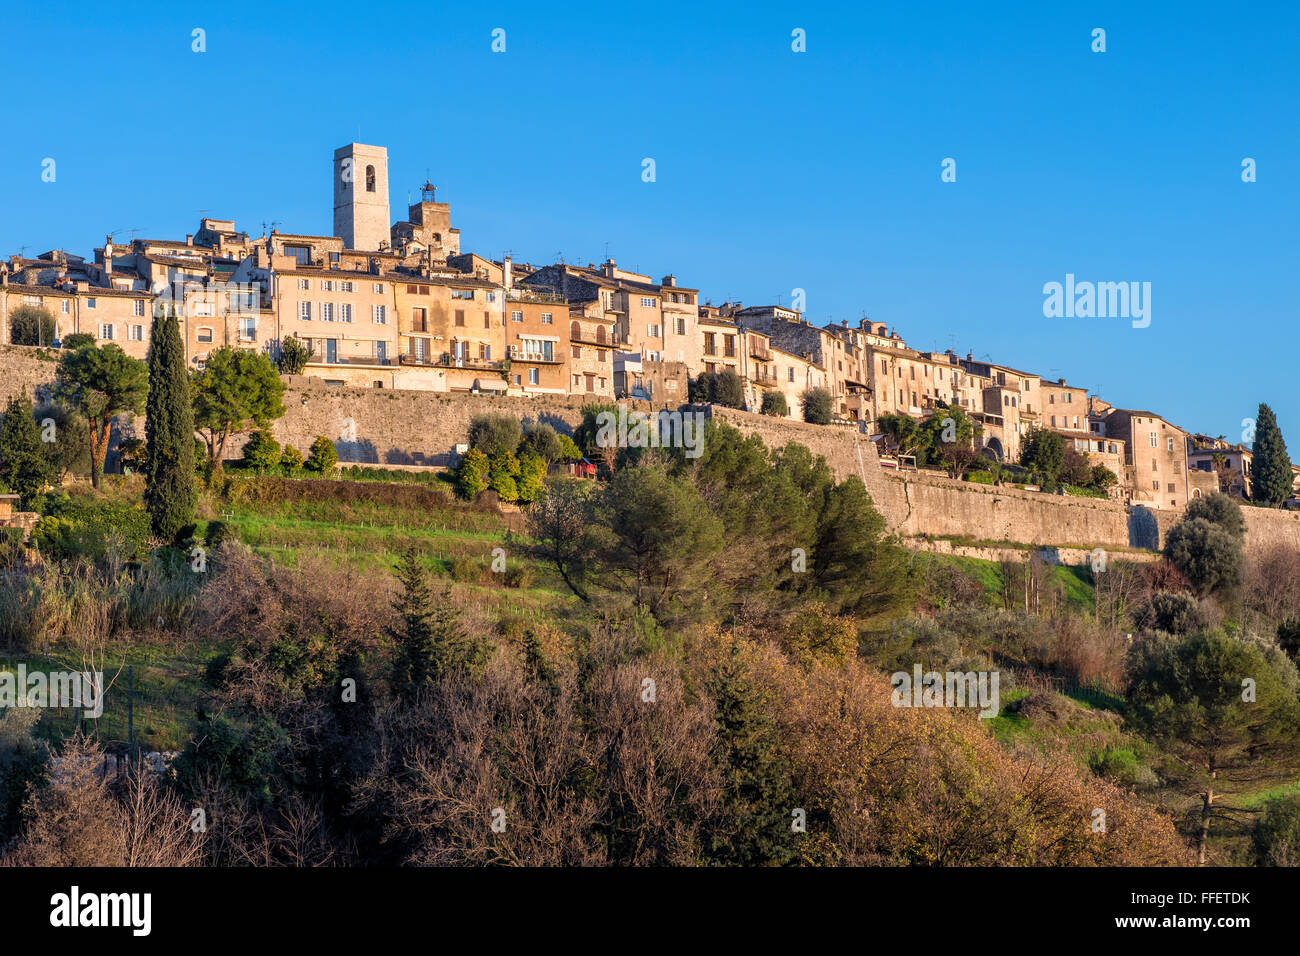 medieval hill town village of Saint Paul de Vence, Alpes-Maritimes Department, Cote d'Azur, France Stock Photo